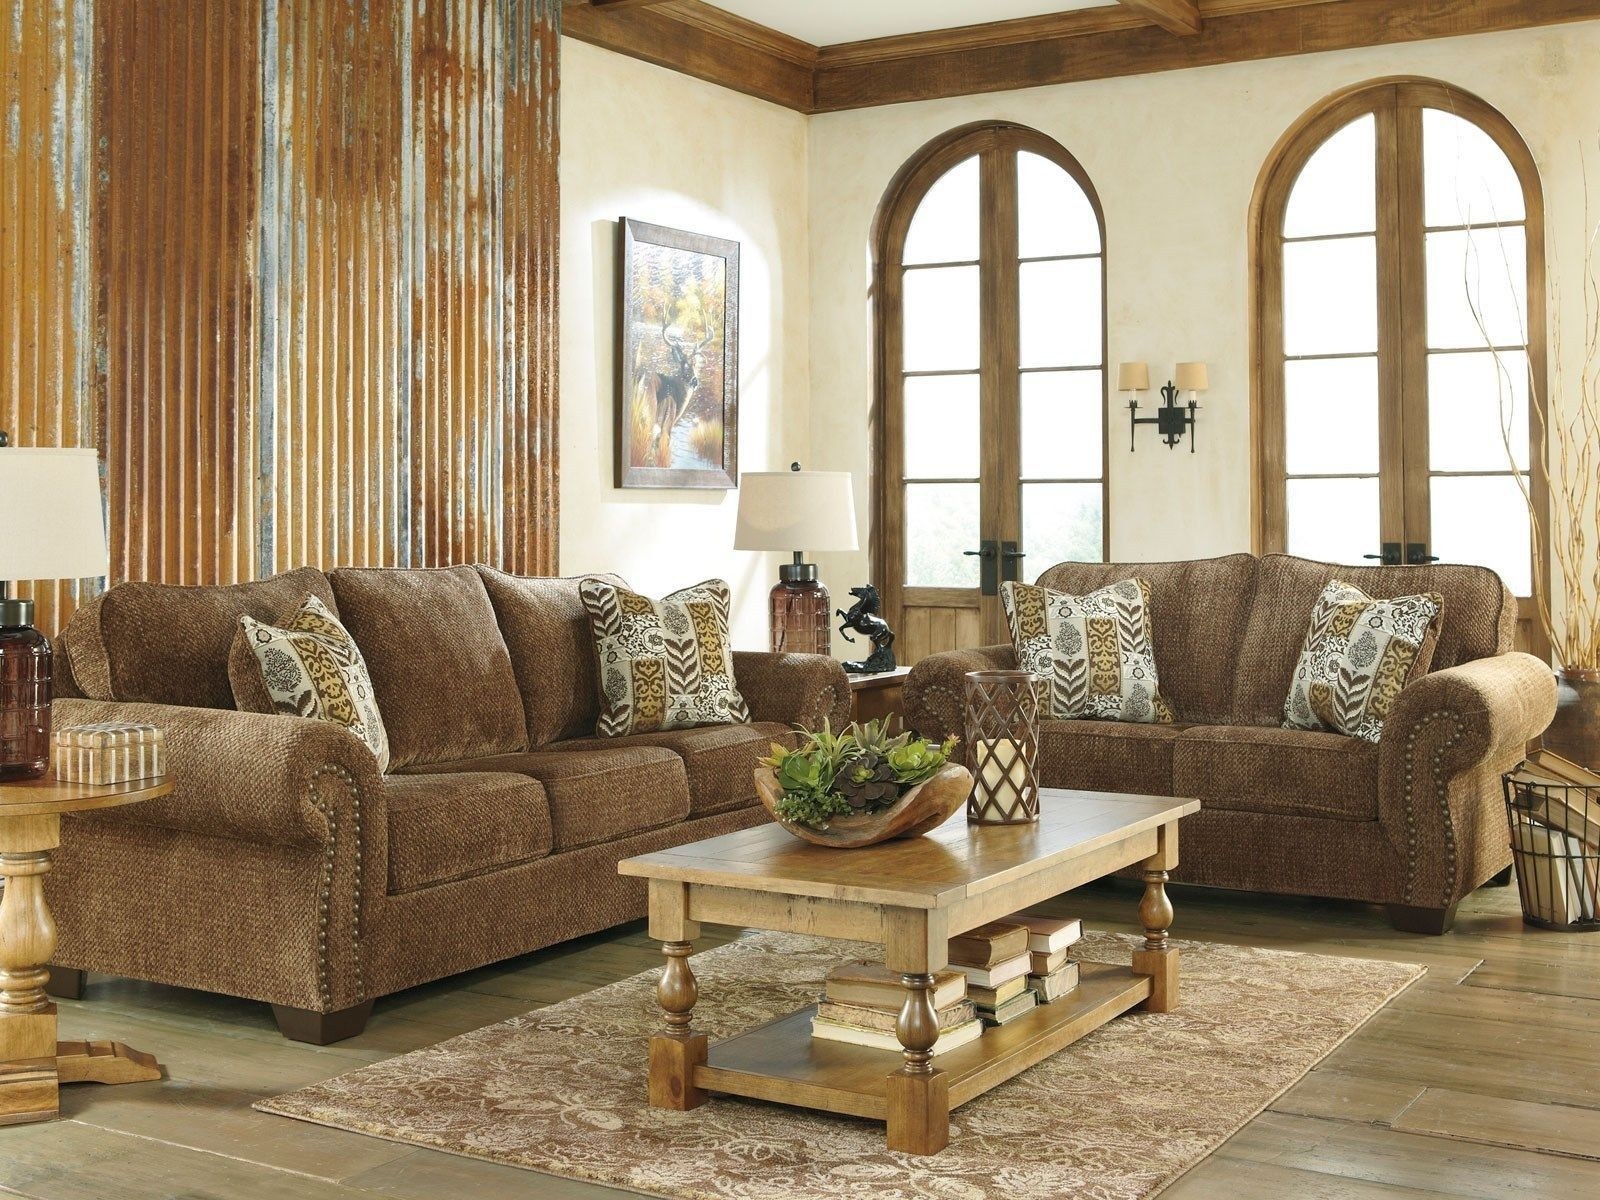 Old world living room sets